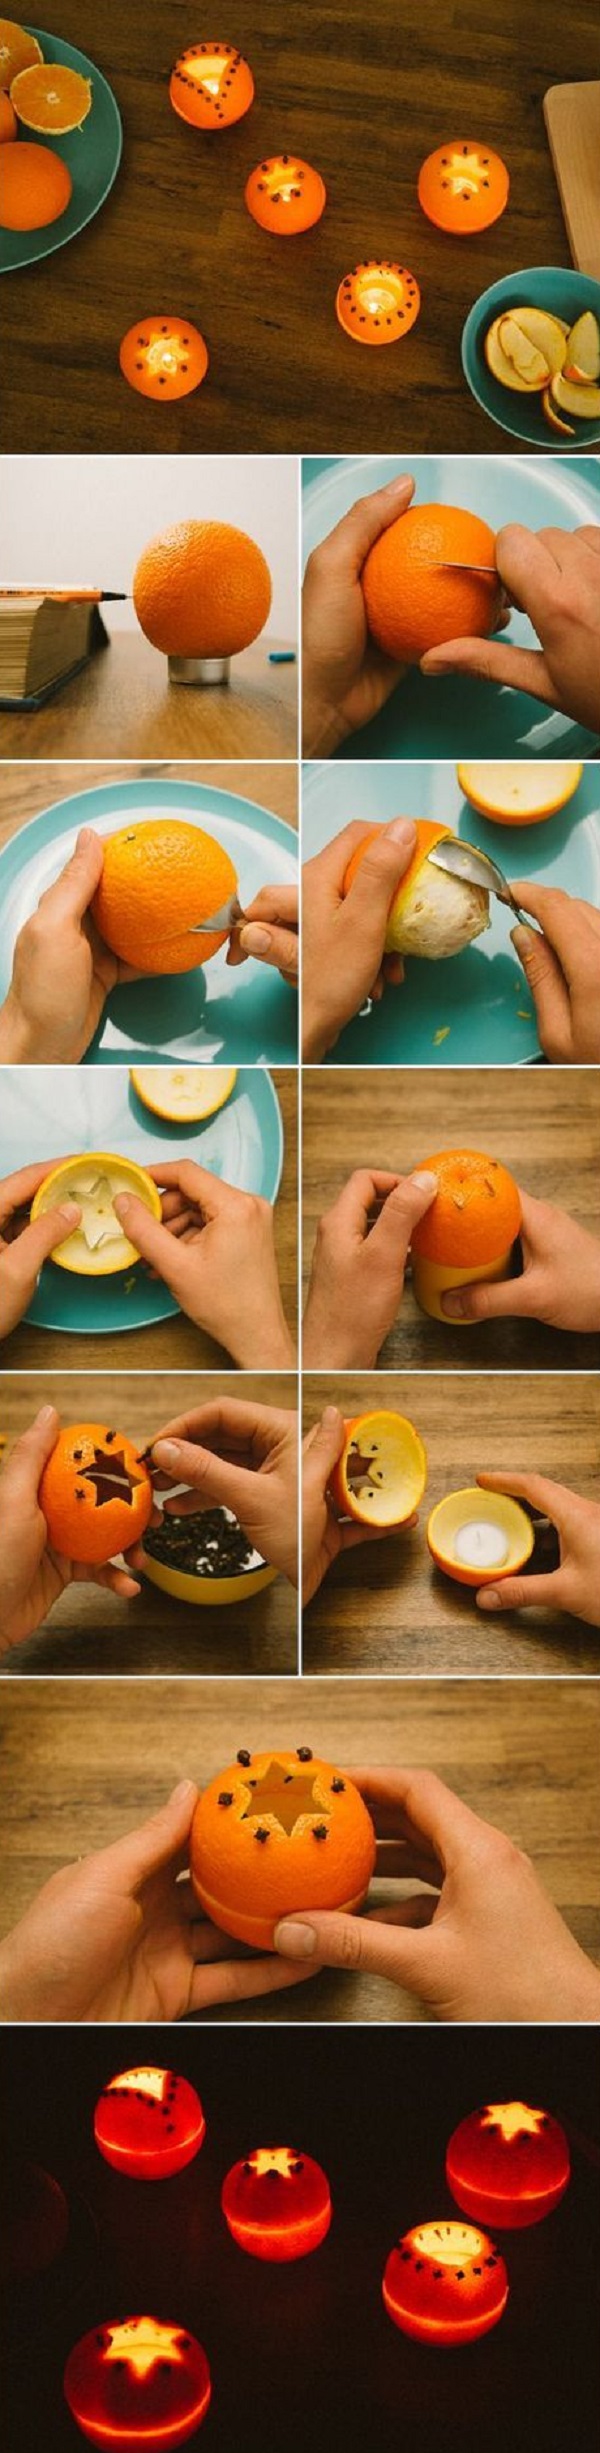 В кожуре мандарина — огромная сила! 7 рецептов, которые спасают